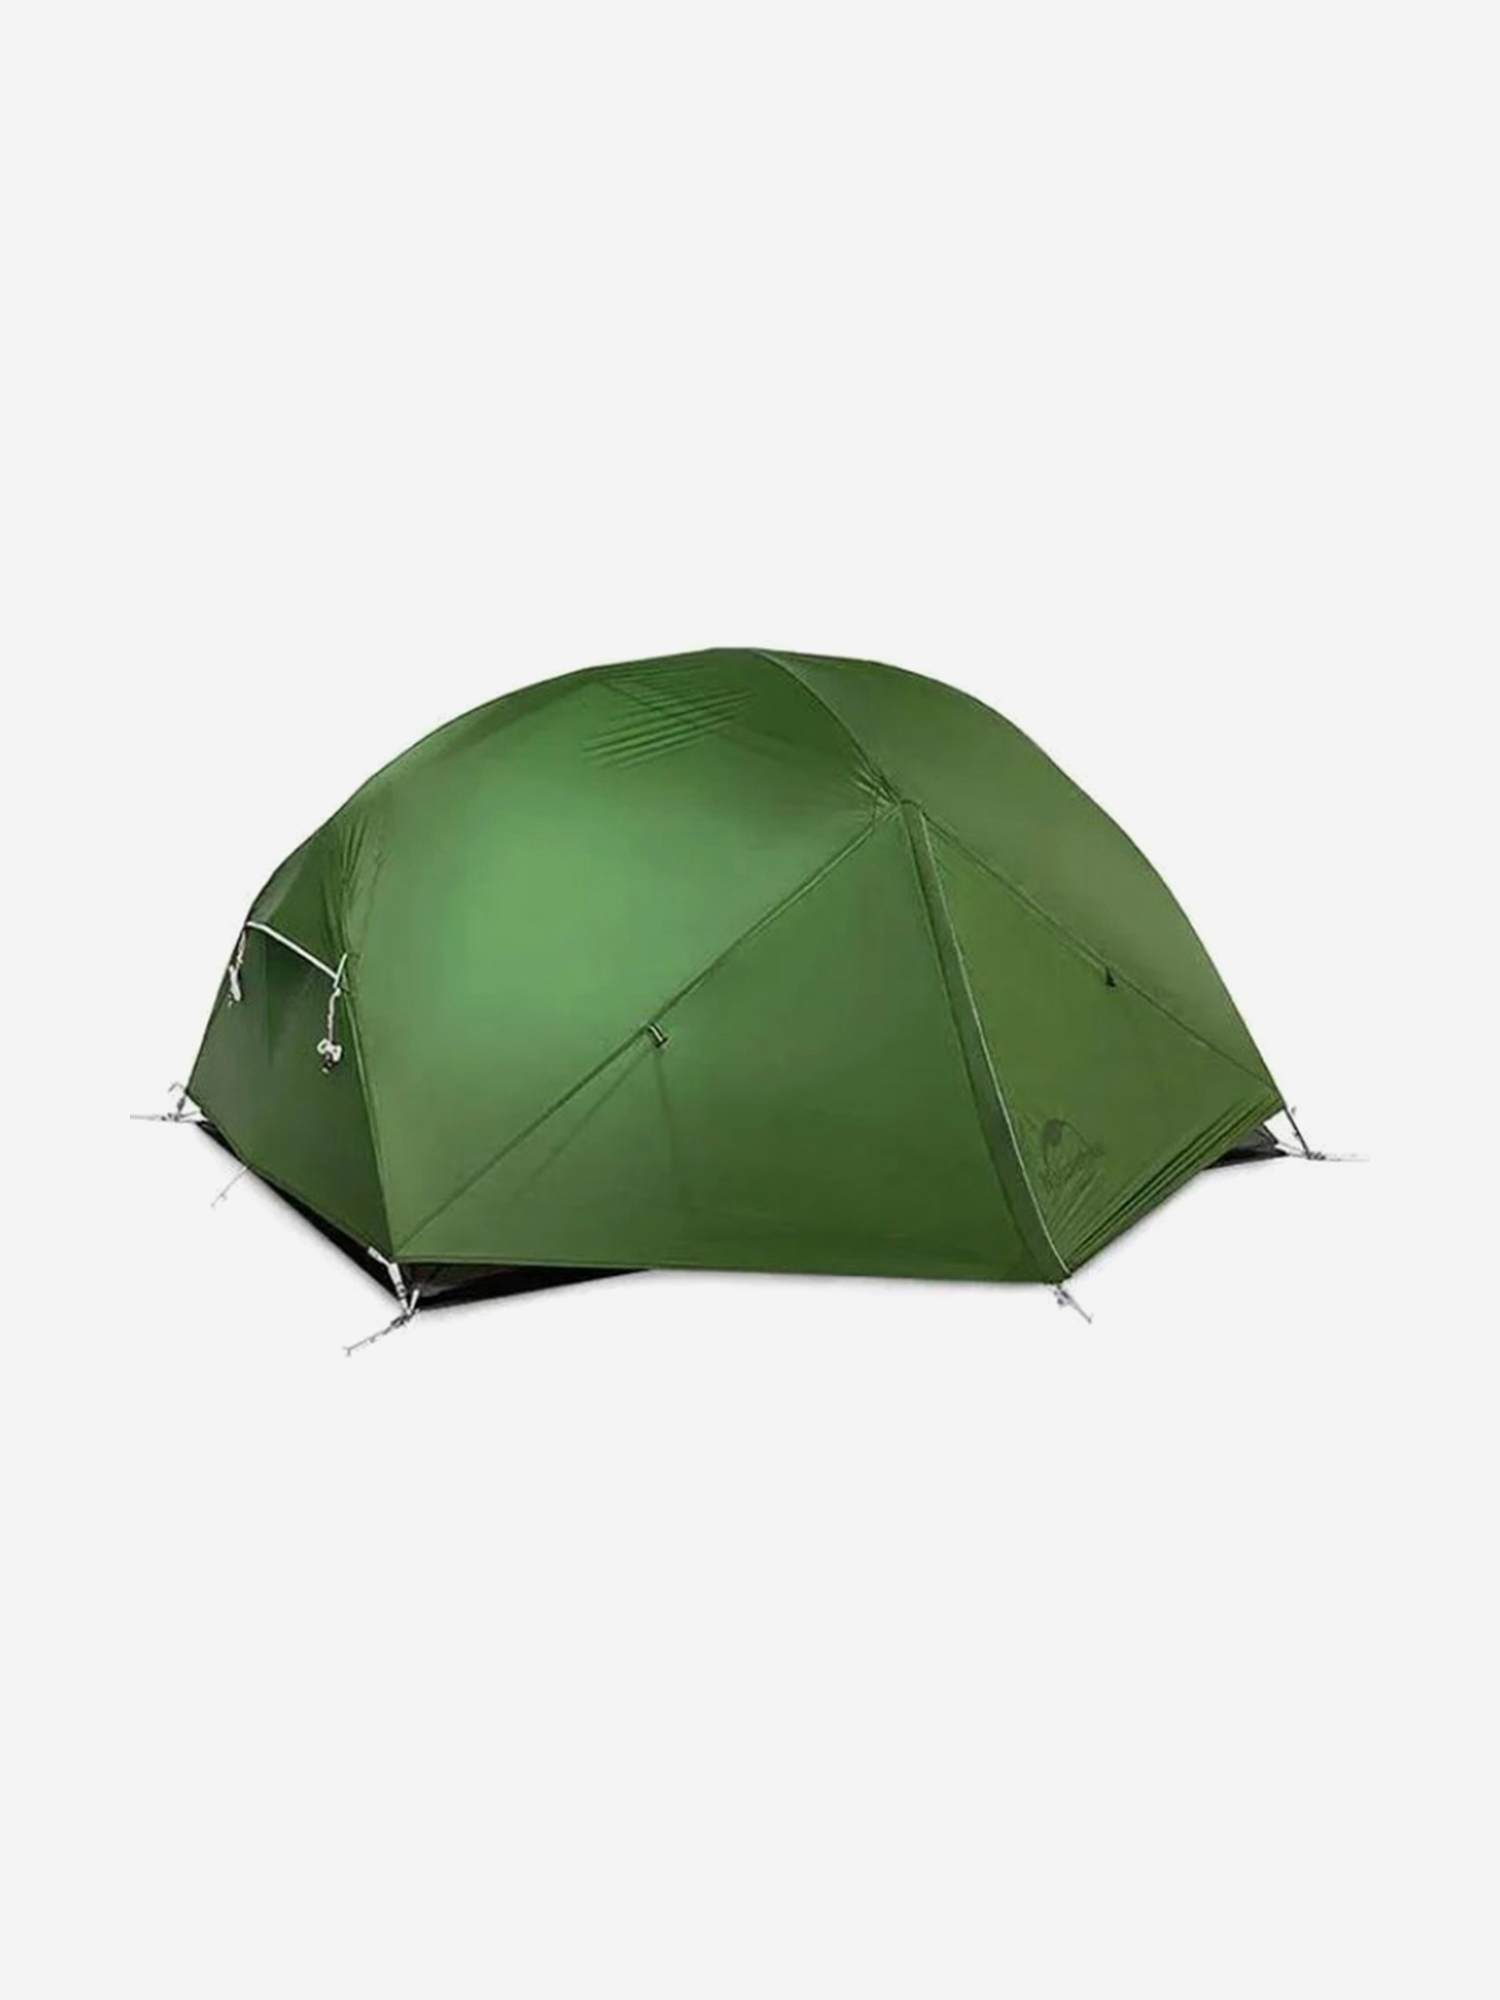 Палатка Naturehike Mongar 2-местная, алюминиевый каркас, зеленая, Зеленый палатка naturehike 3 местная быстросборная зеленая зеленый